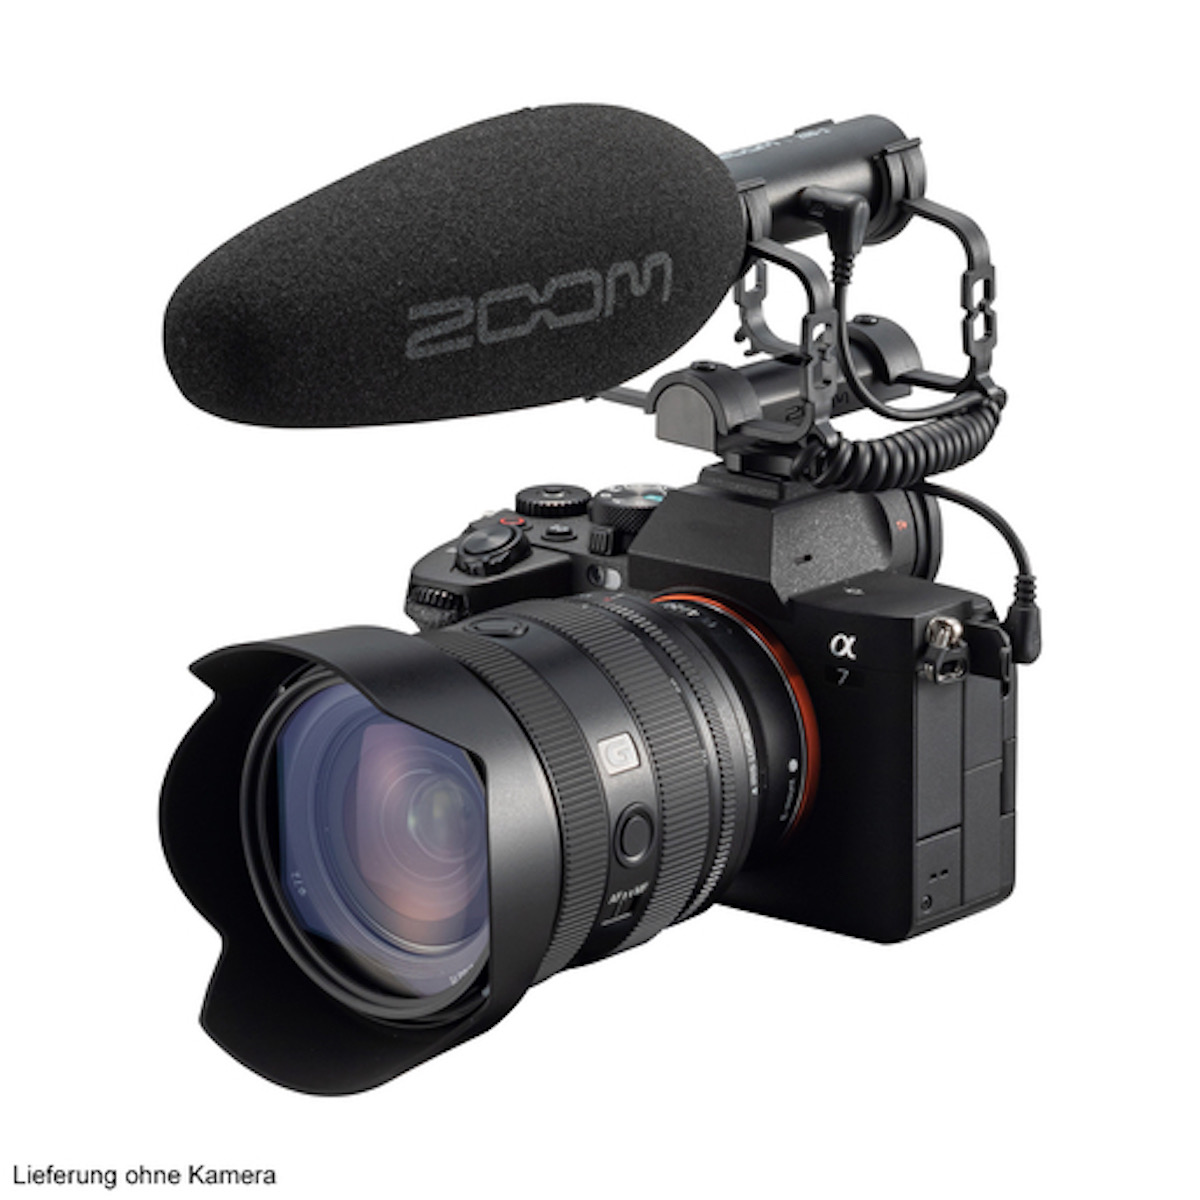 Zoom ZSG-1 Kamera Shotgun Mikrofon